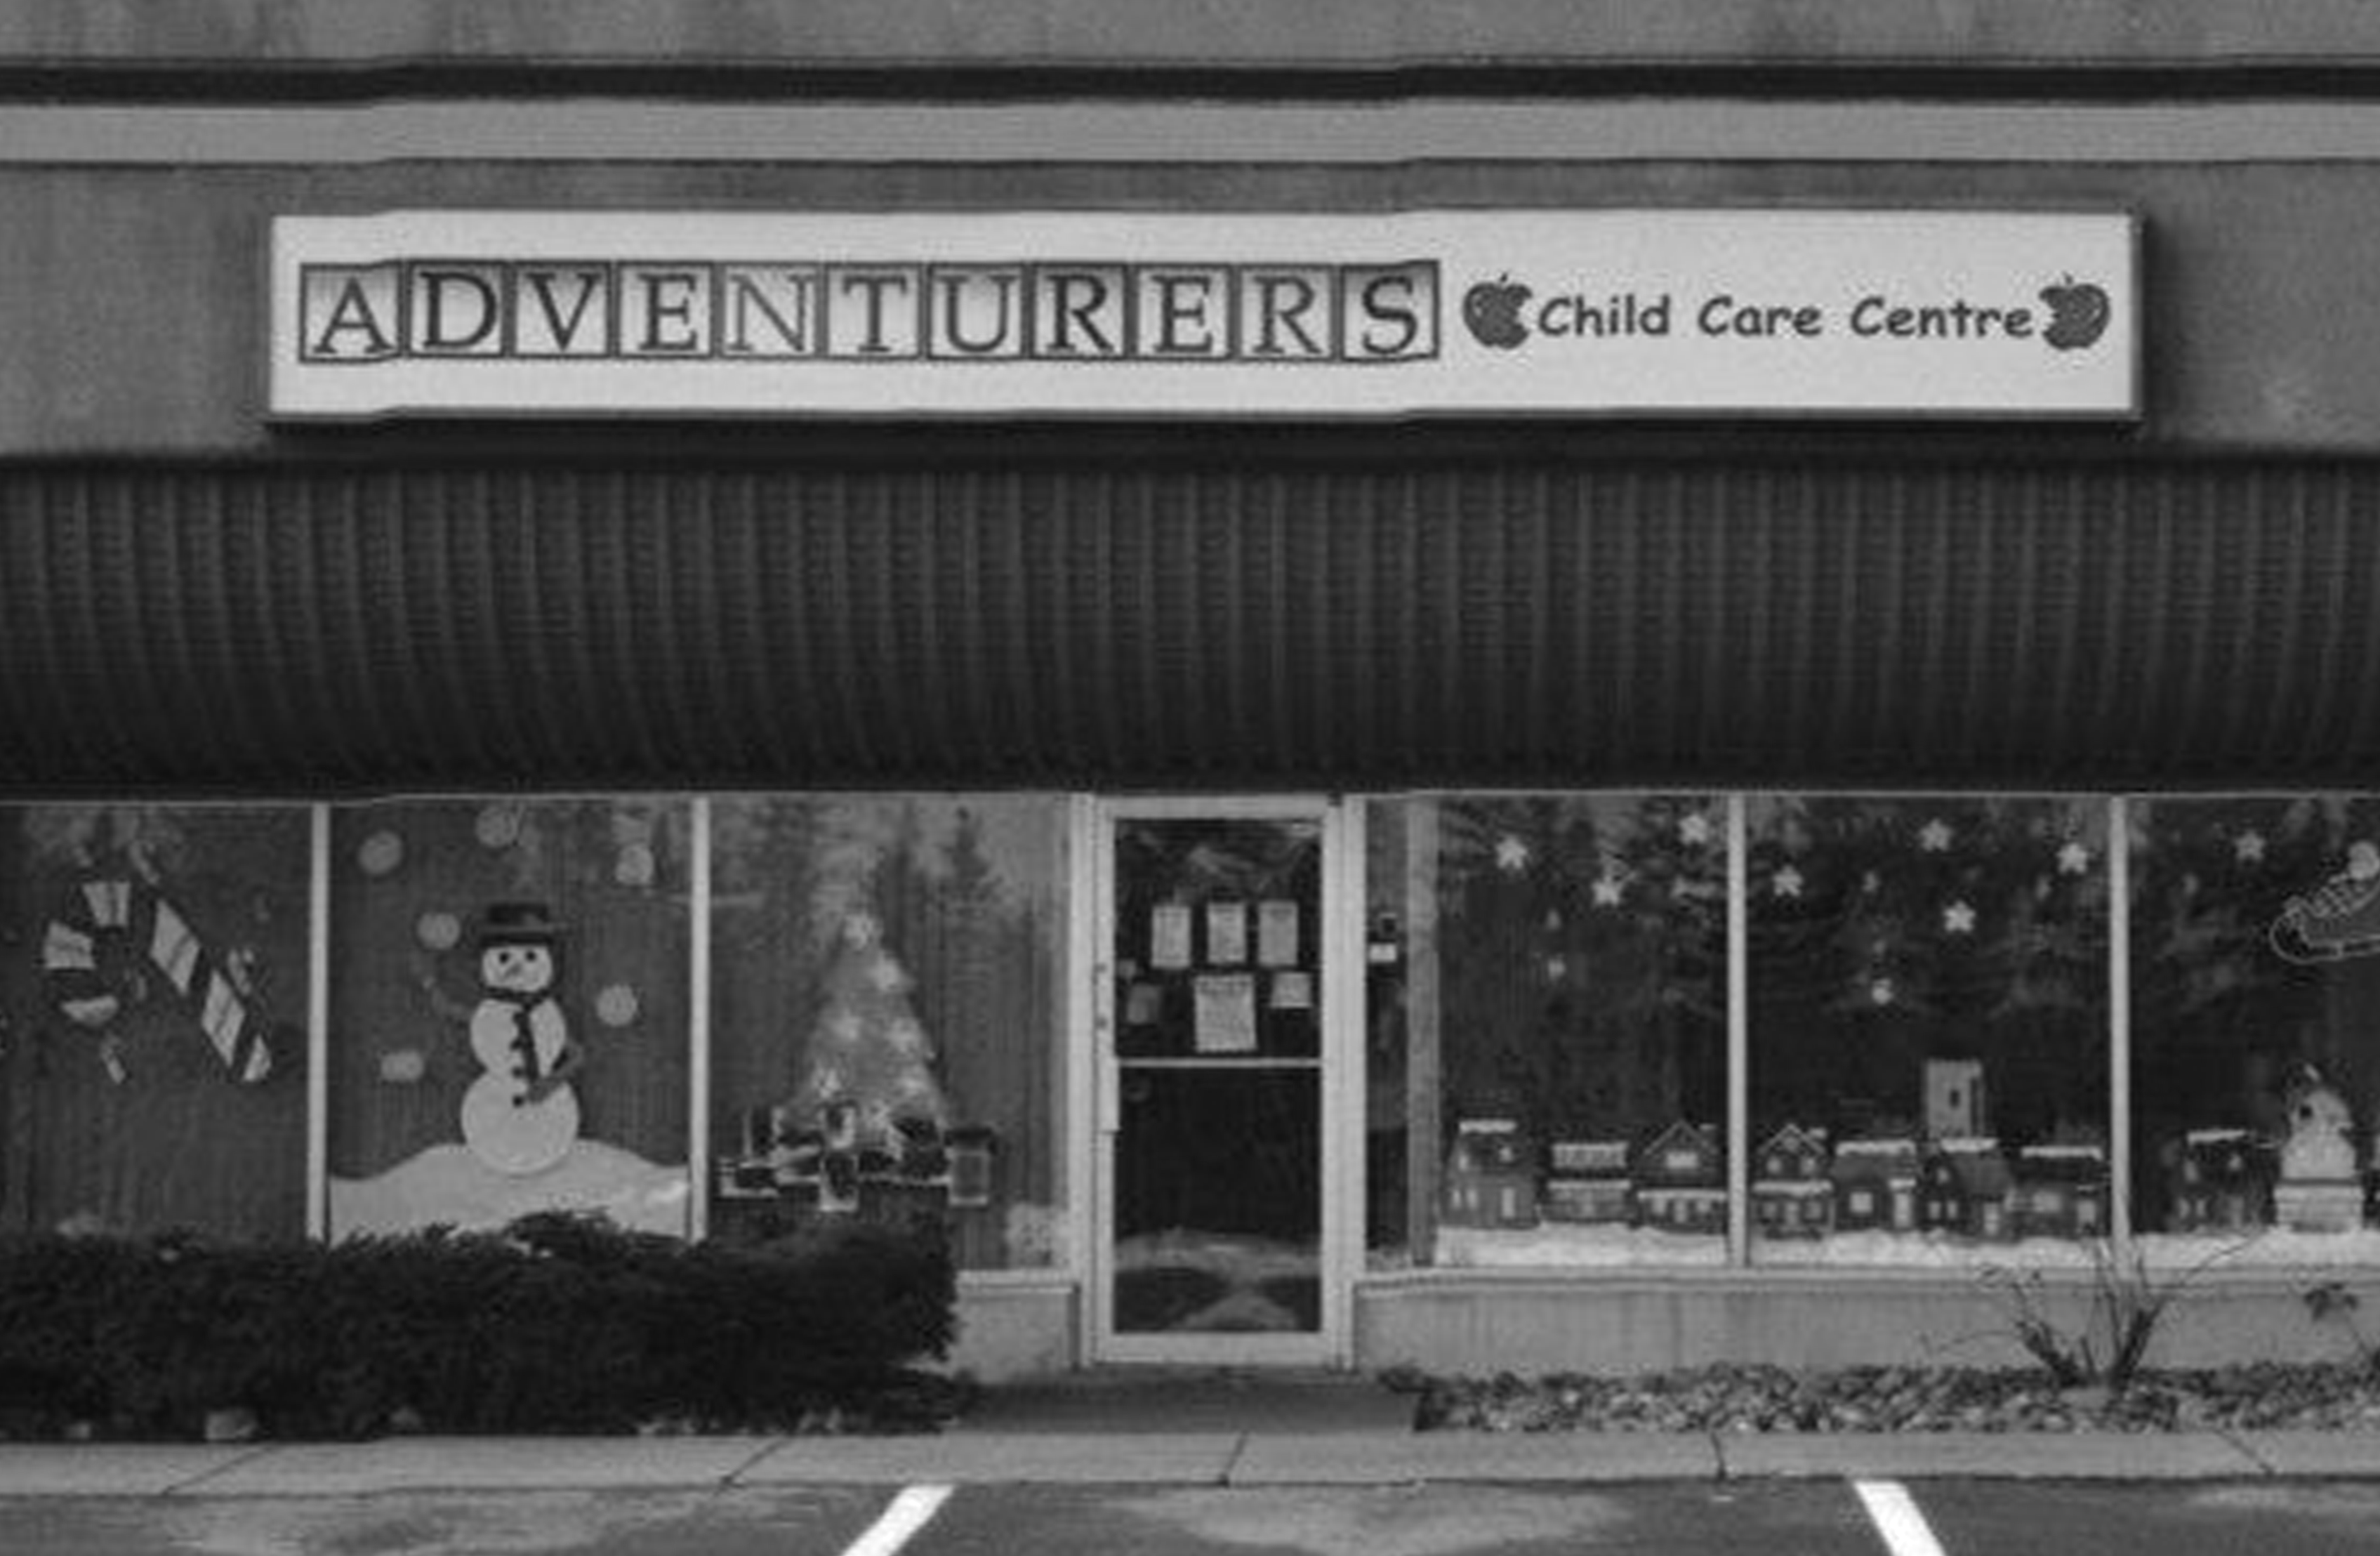 Adventurers Child Care Centres